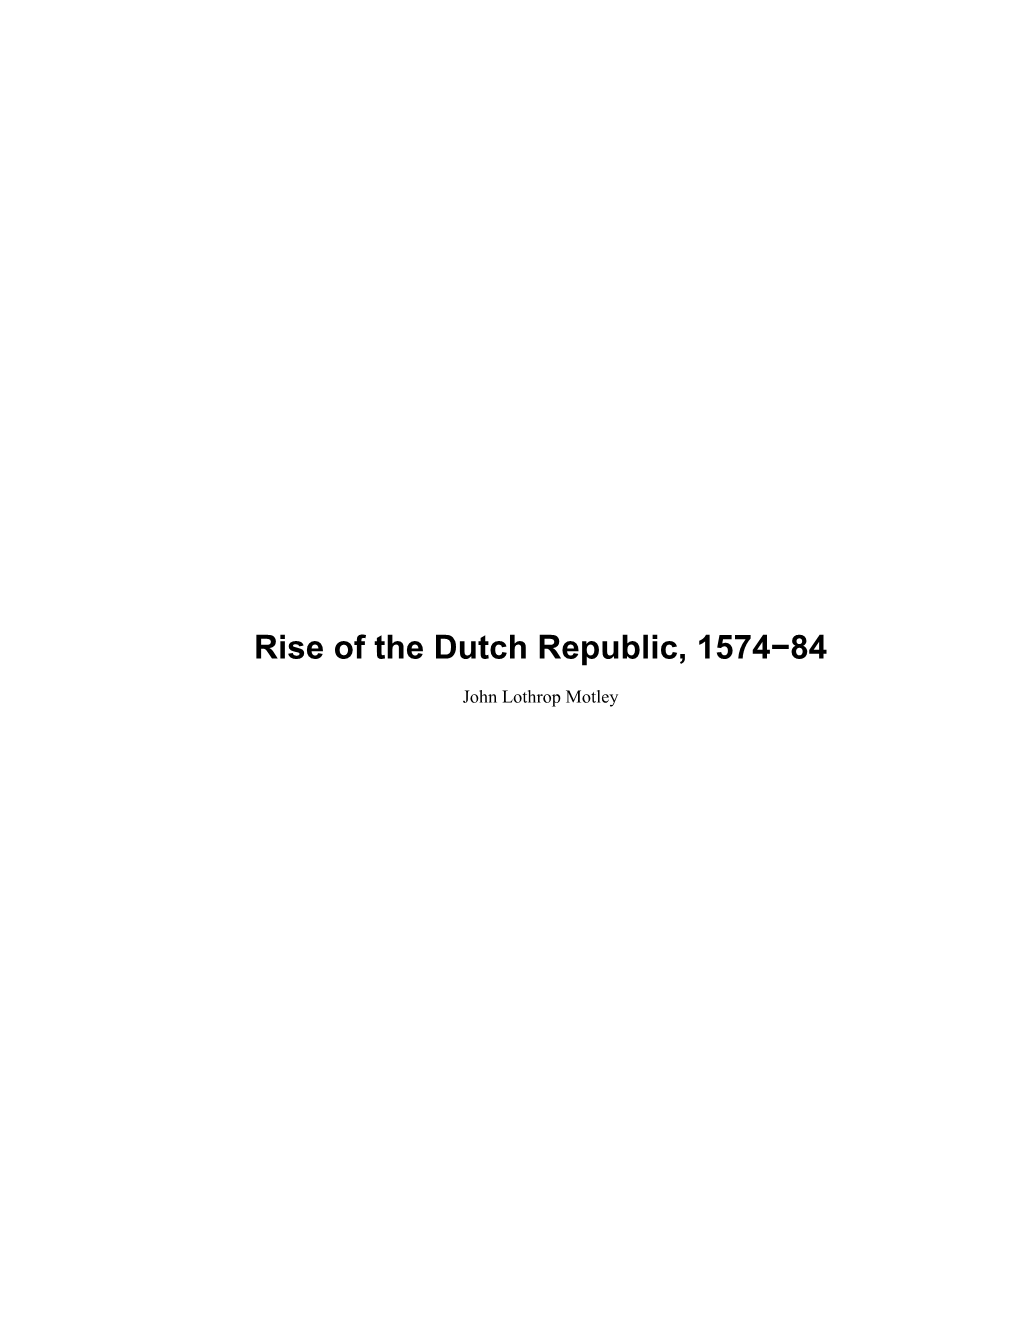 Rise of the Dutch Republic, 1574-84